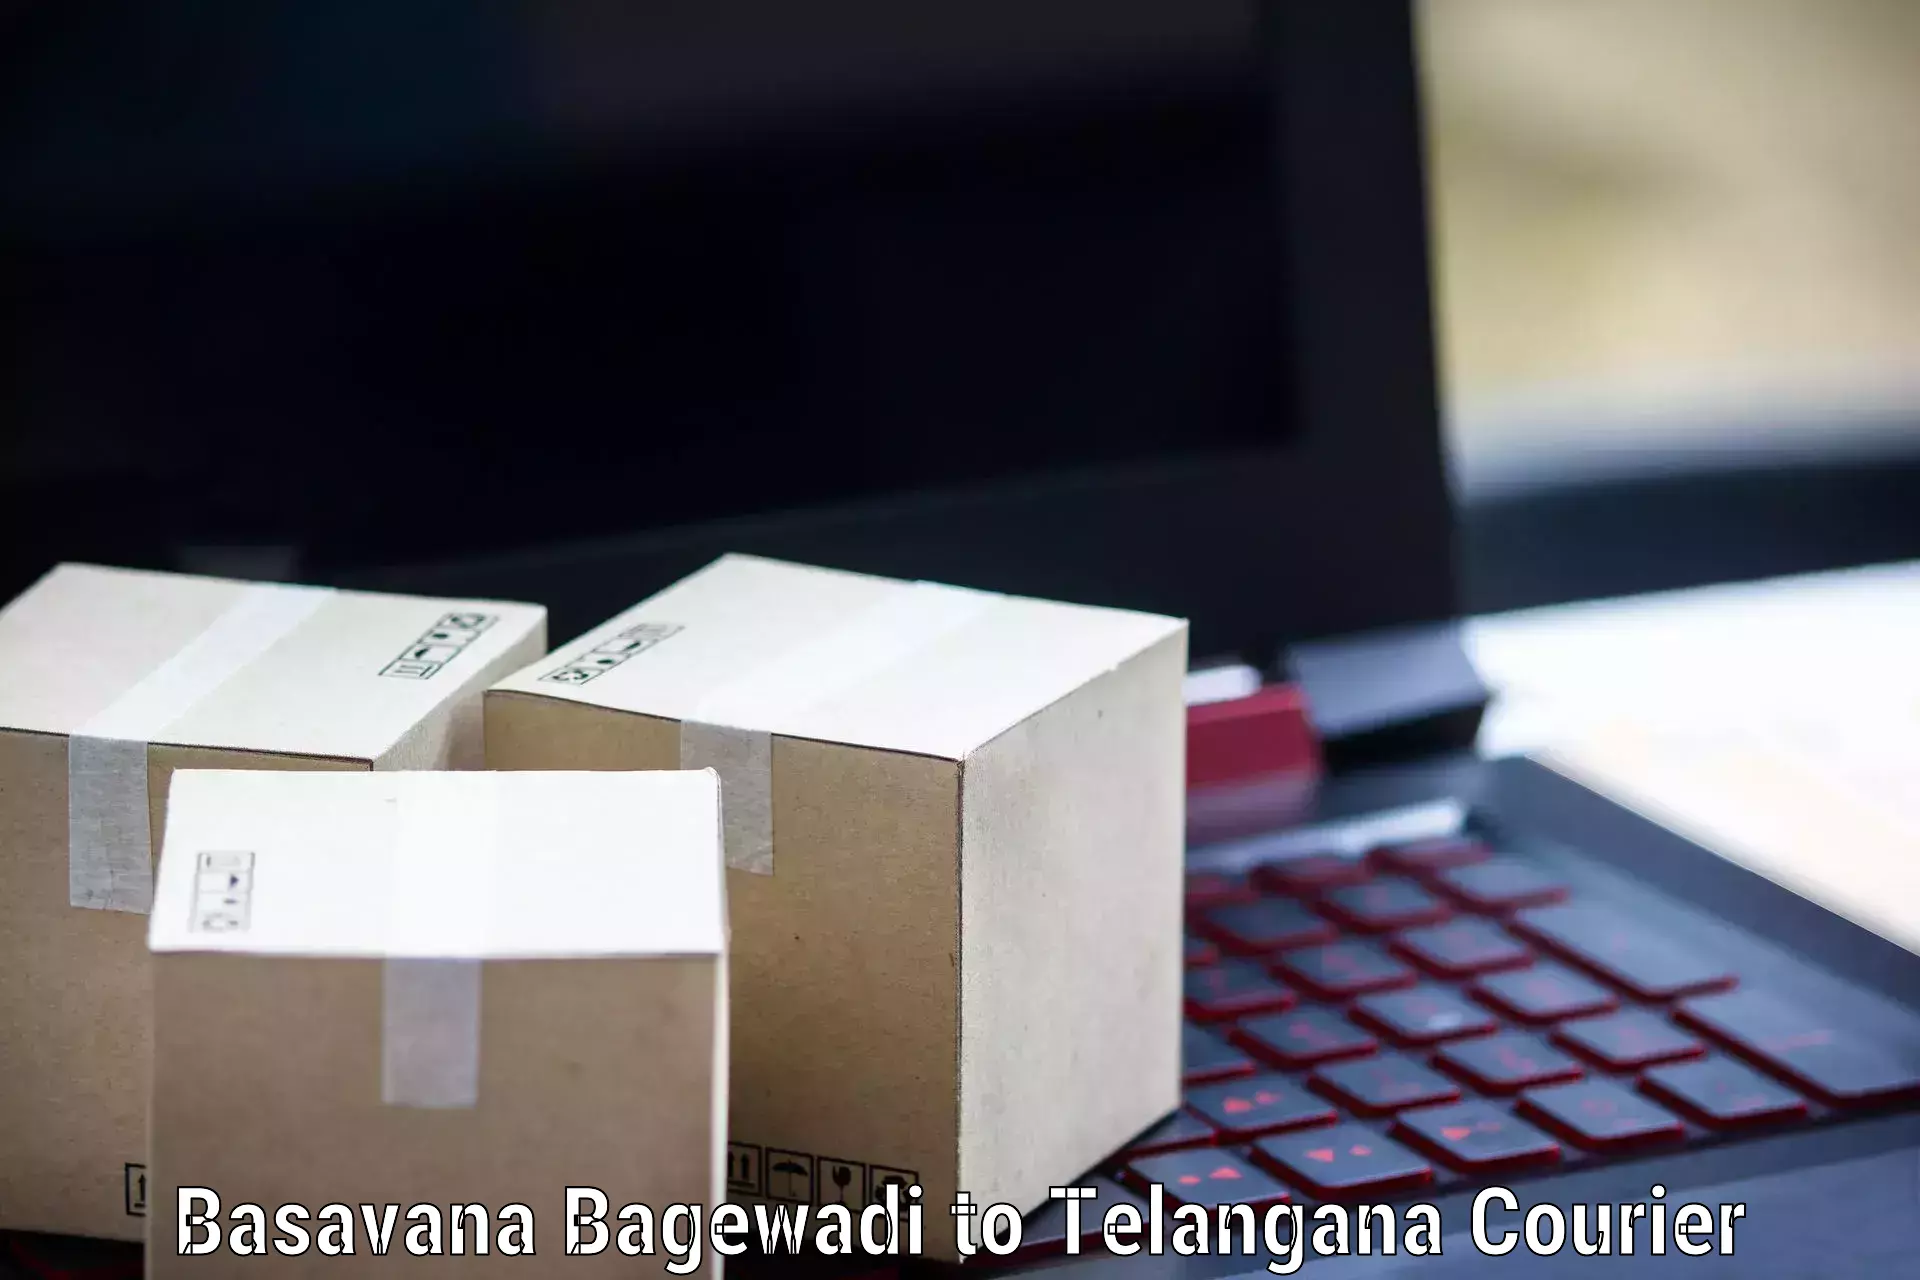 Individual parcel service Basavana Bagewadi to Mothkur